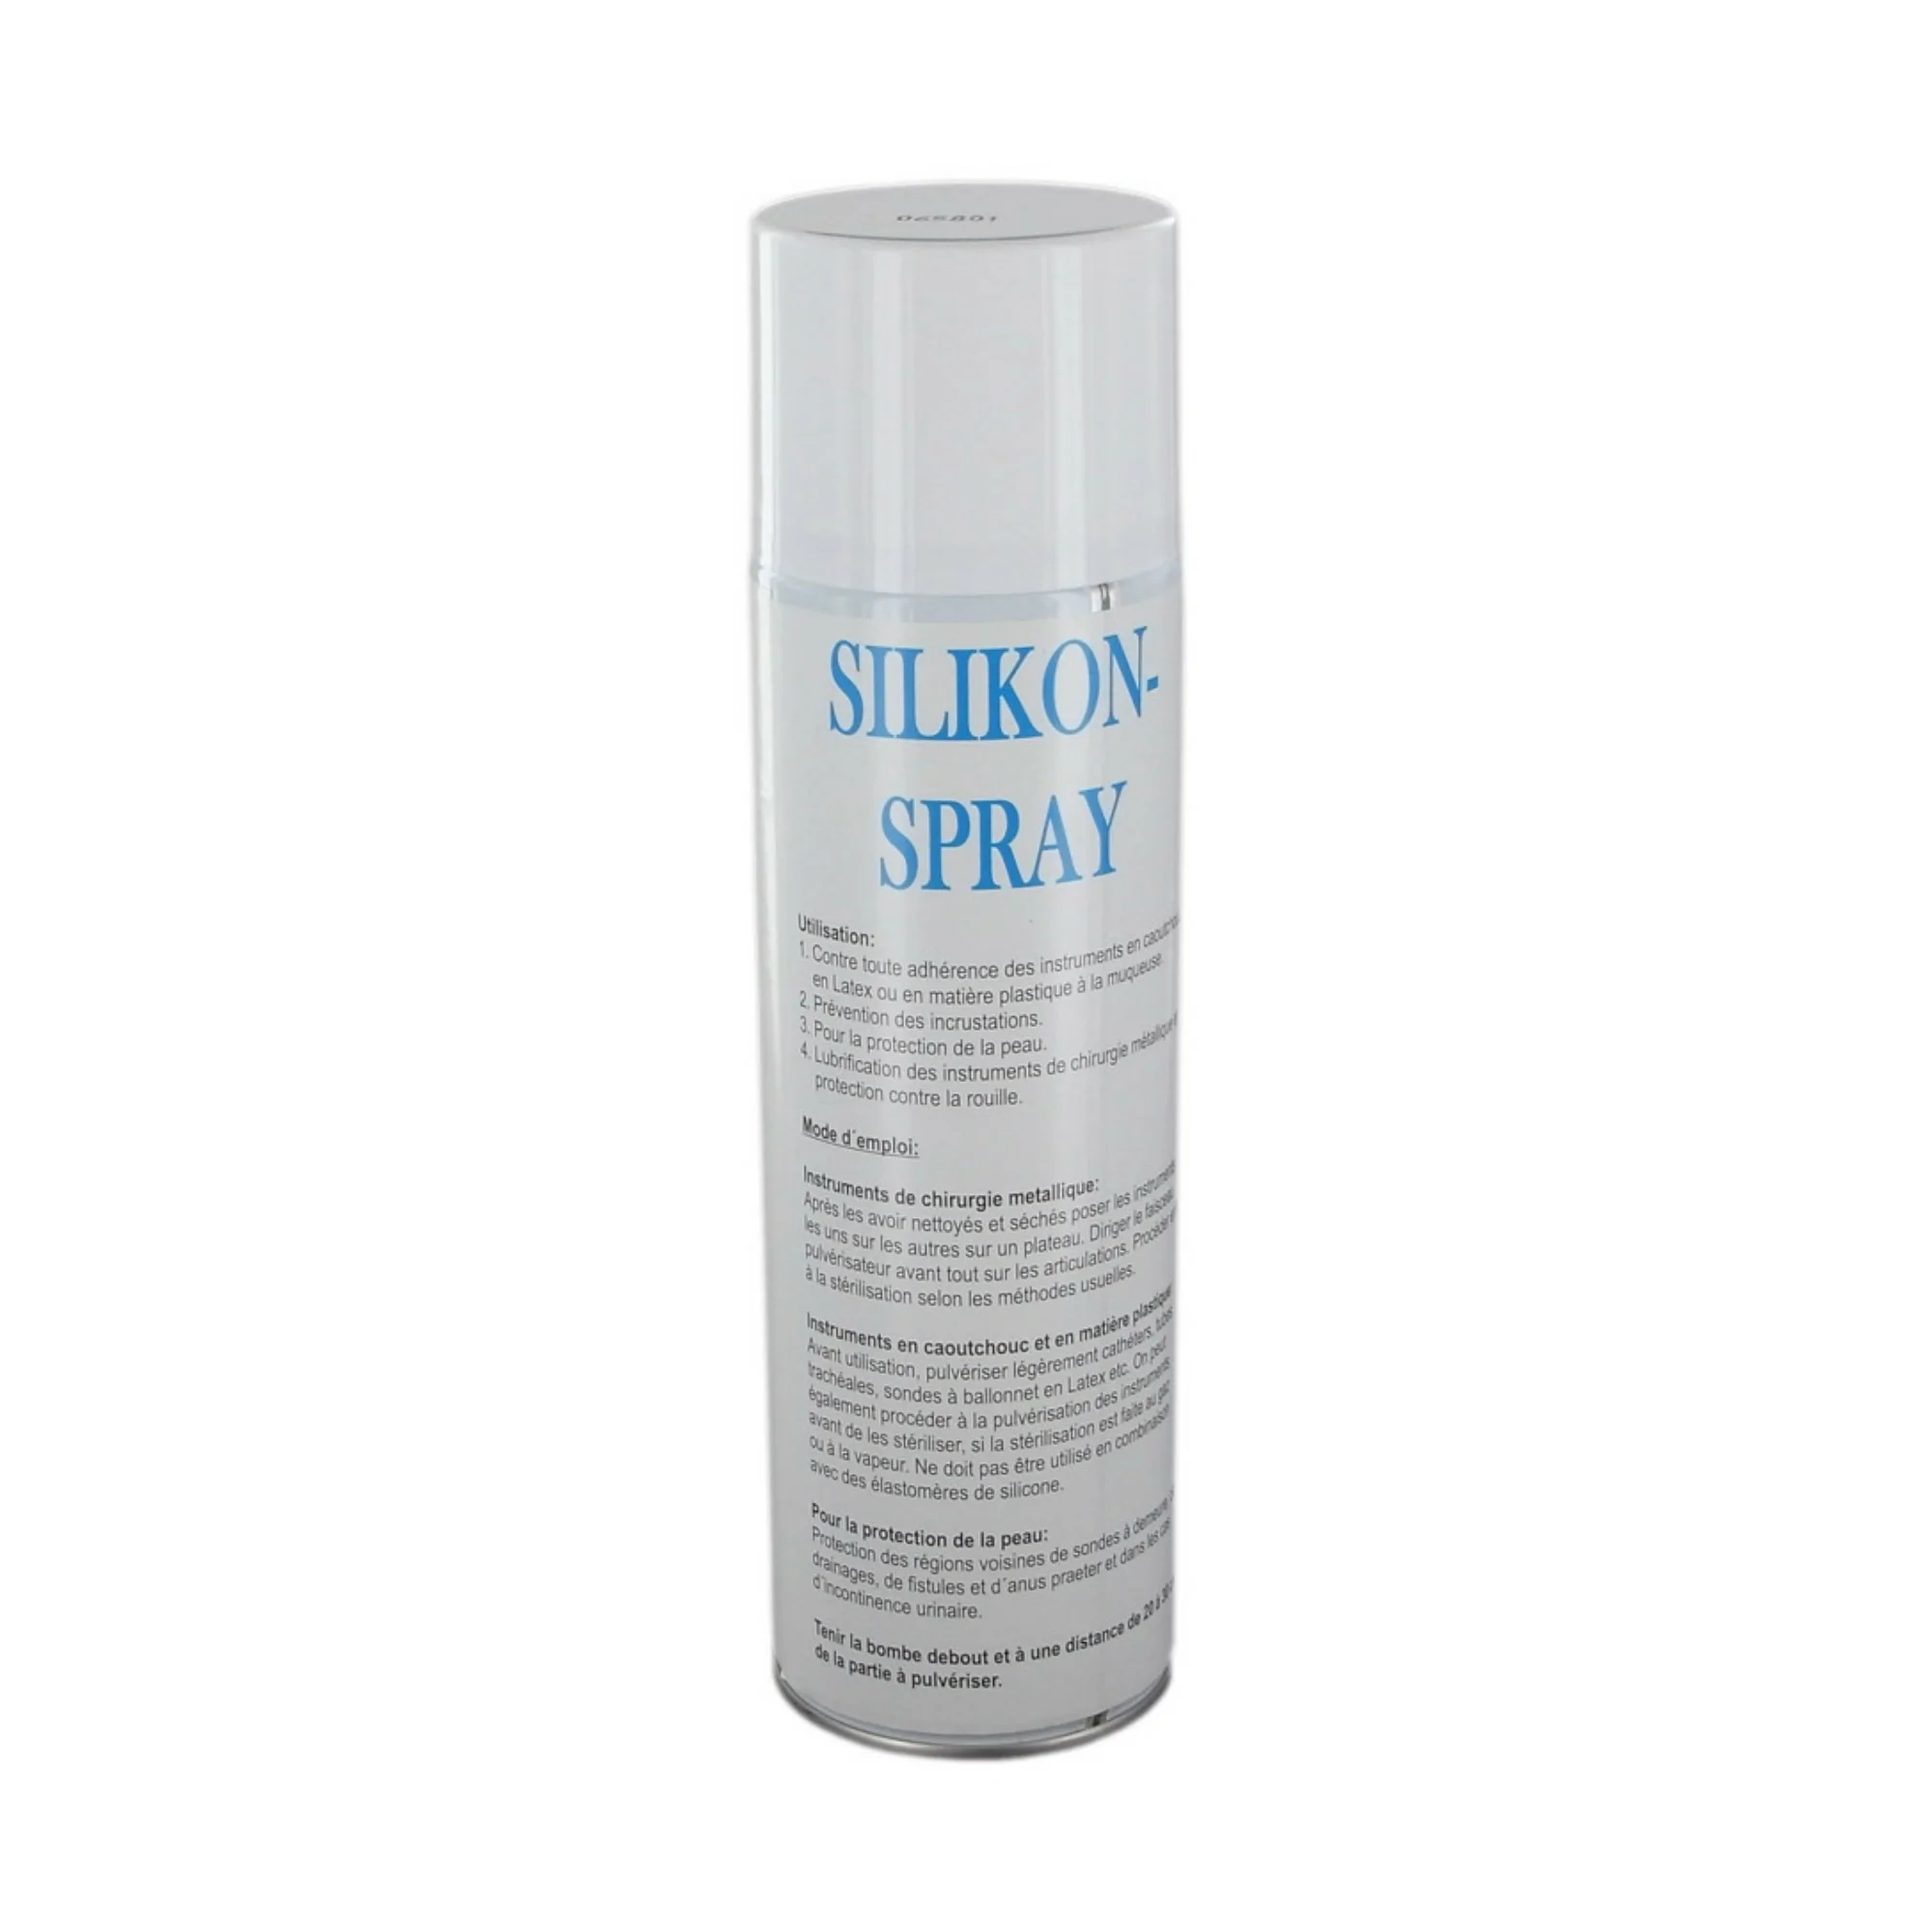 Bombe "Silikon Spray" lubrifiante pour pince de pédicurie fabriqué par Comed vendu par My Podologie